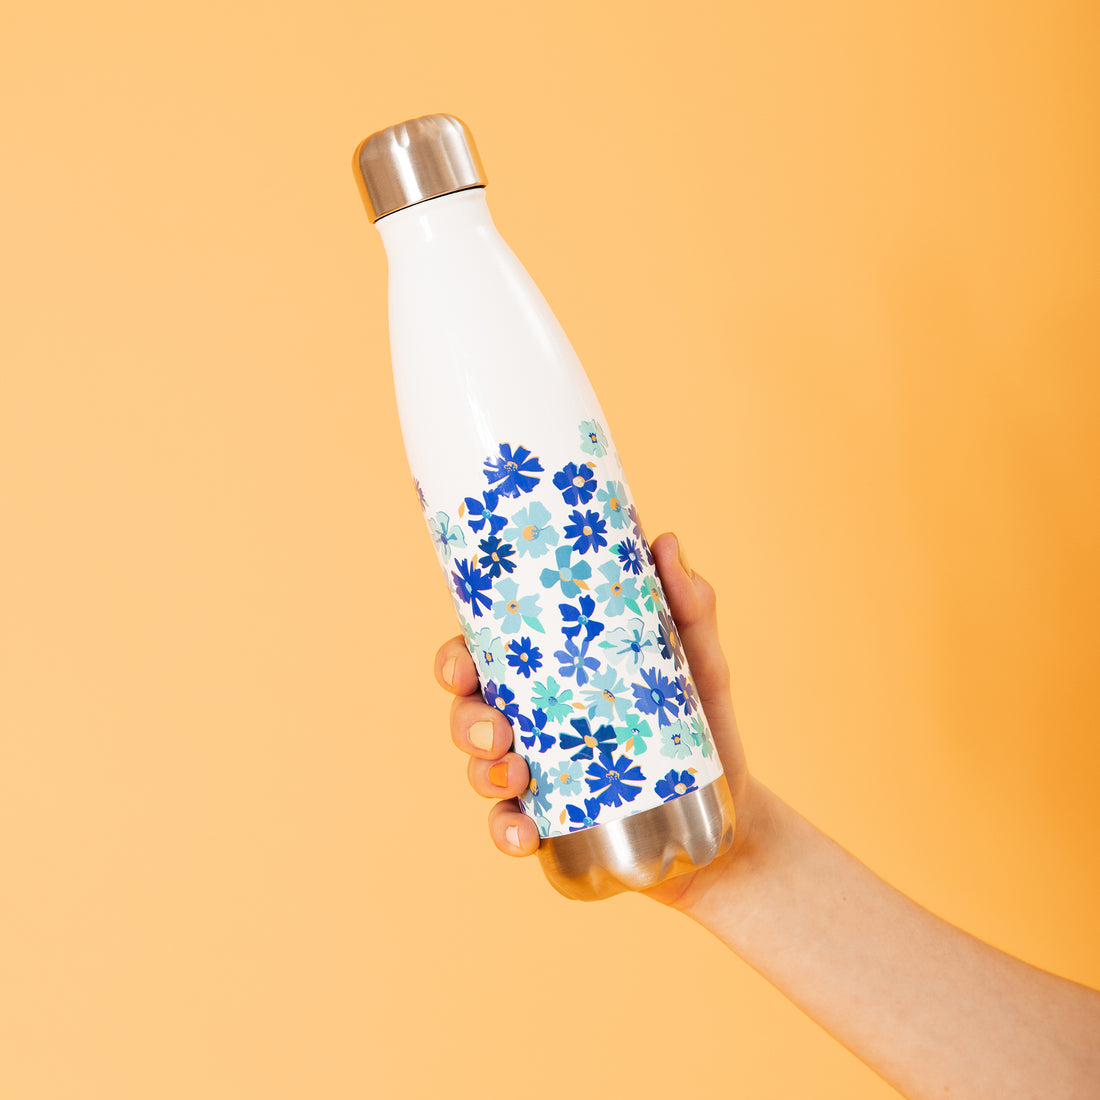 Fleur Blue Stainless Steel Water Bottle